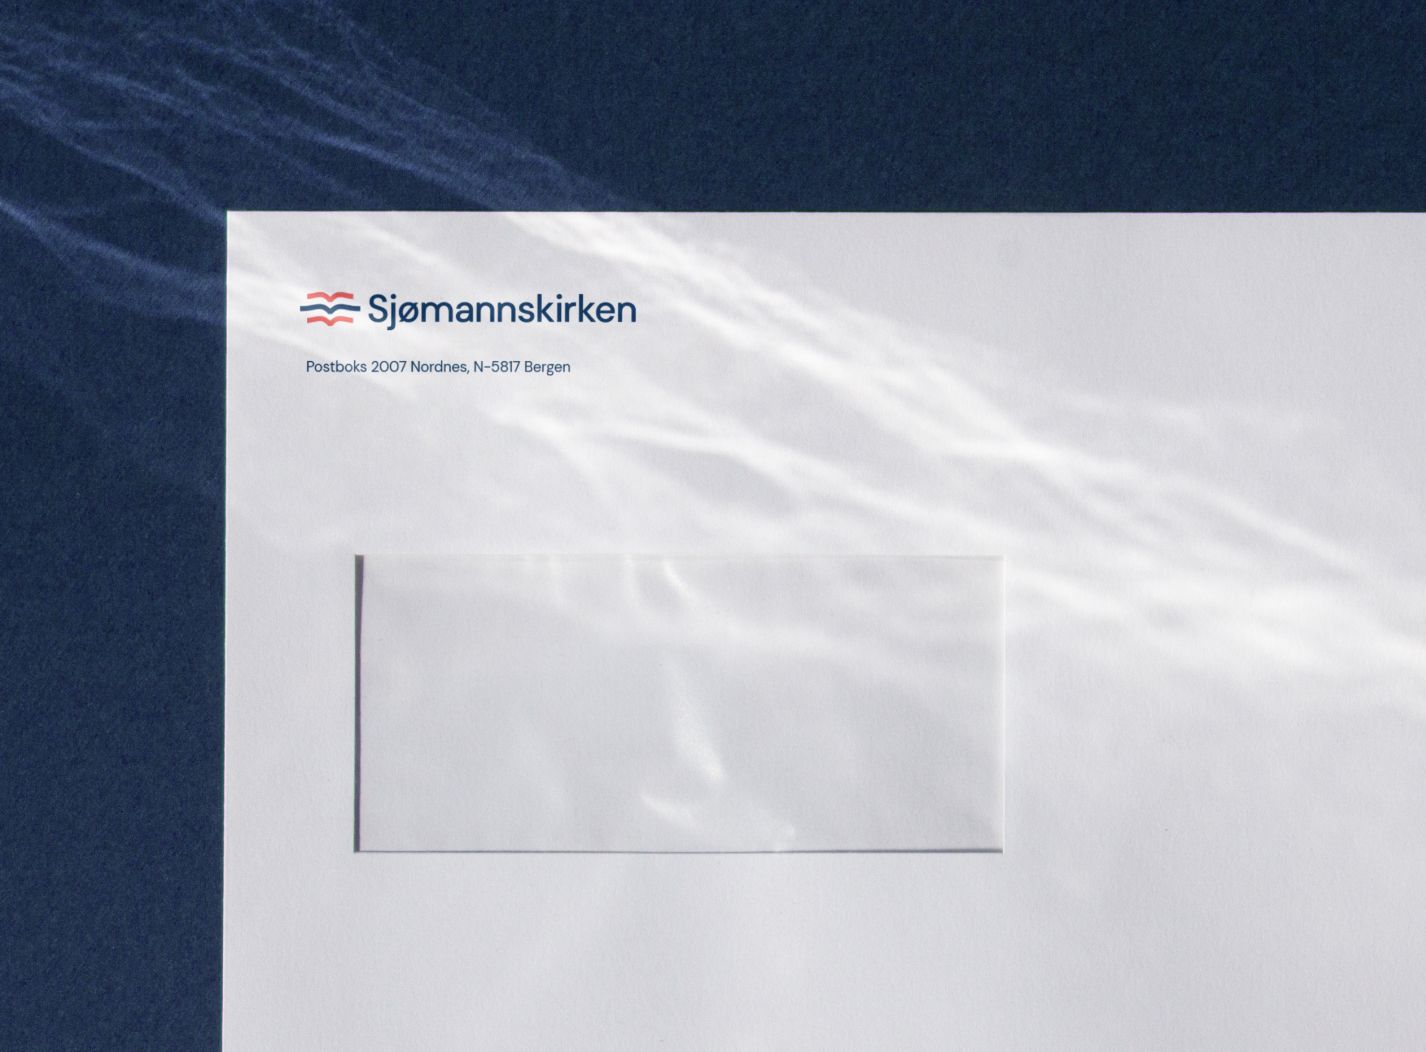 Sjømannskirken logo on an envelope